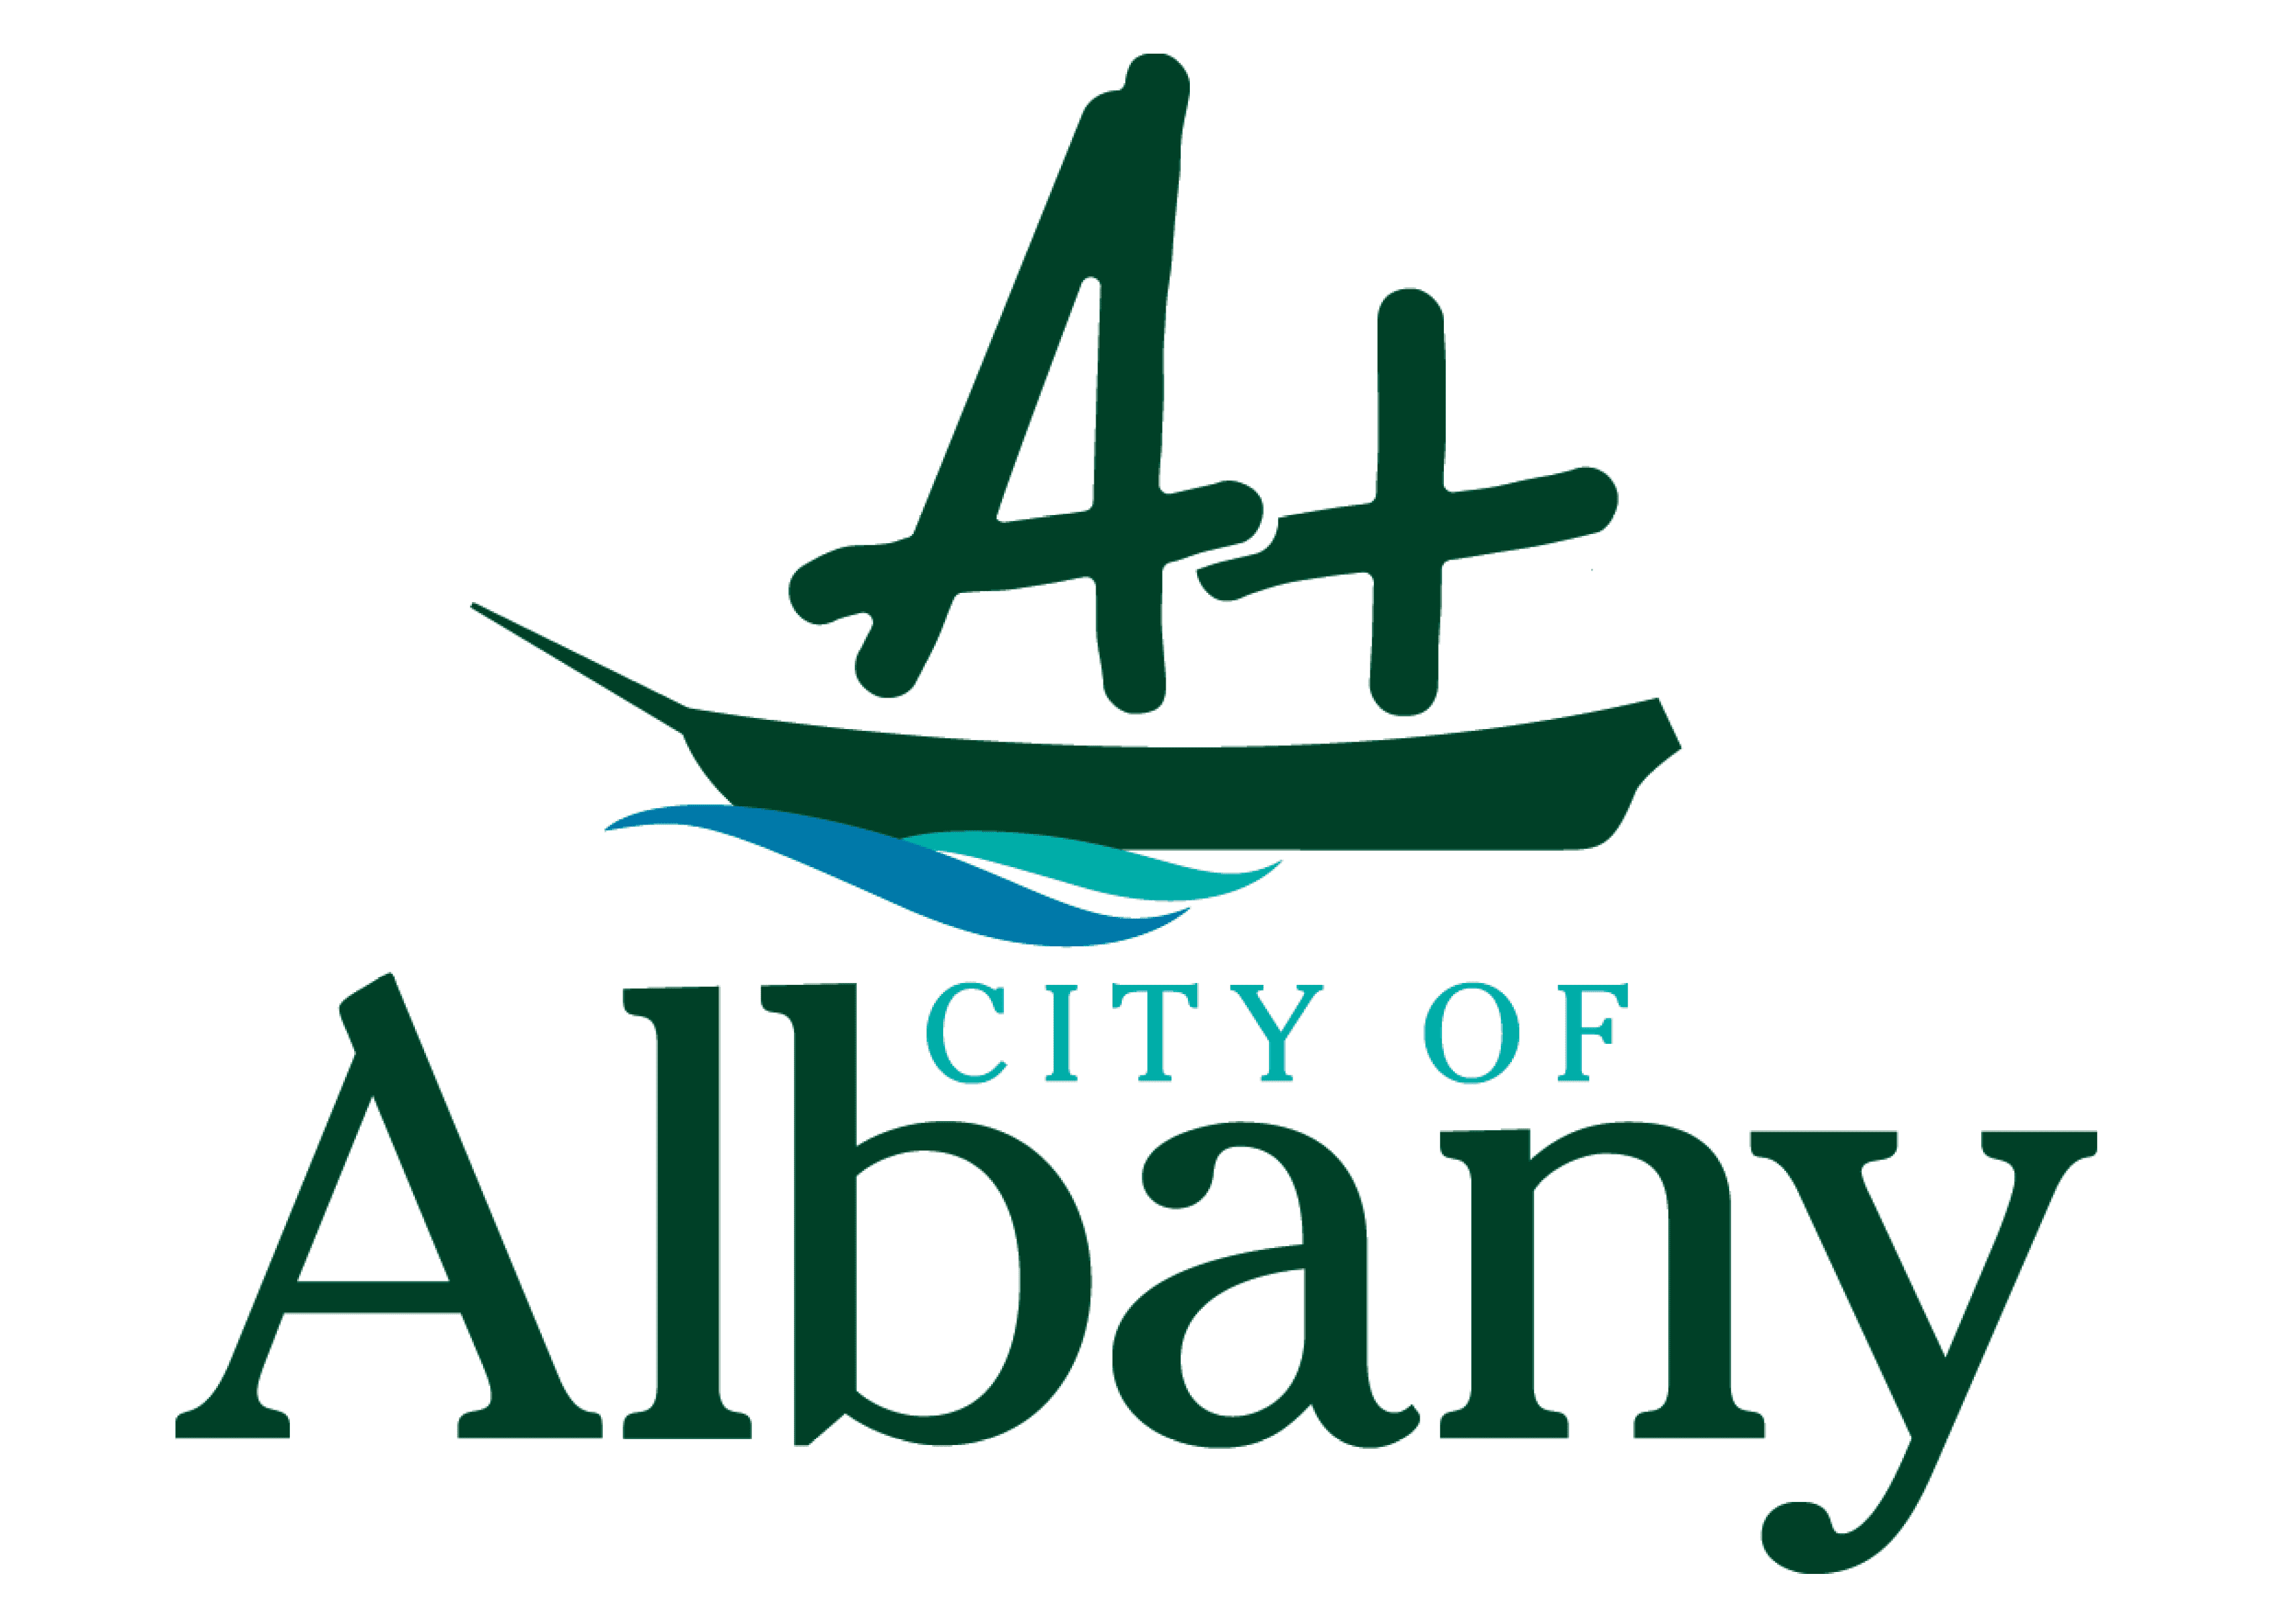 City of Albany logo